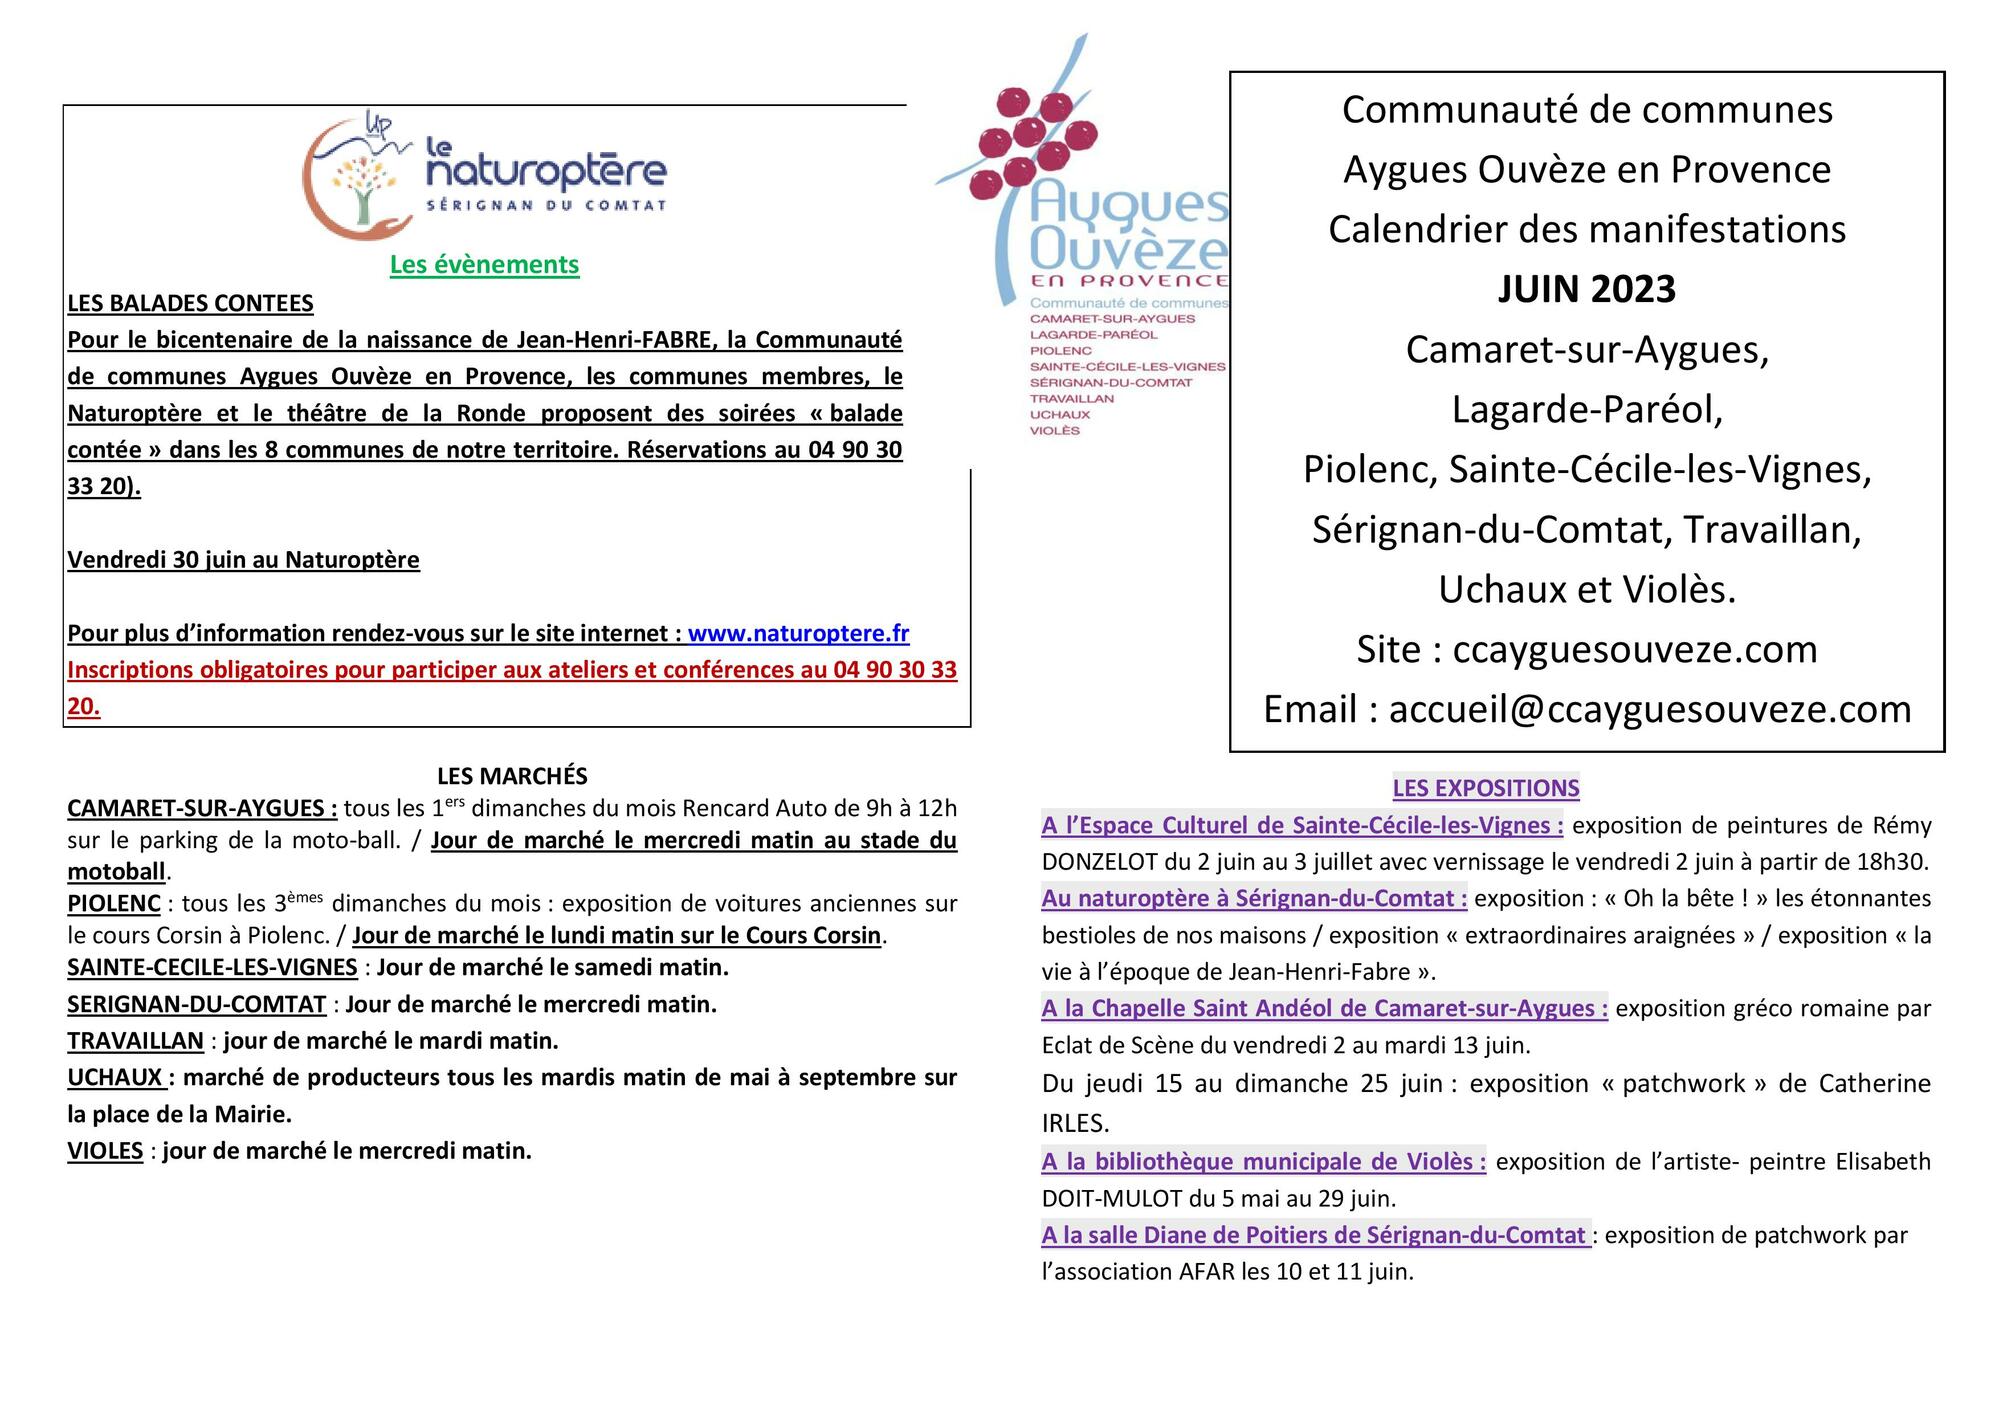 Agenda des manifestations du mois de juin sur la Communauté de communes Aygues Ouvèze en Provence